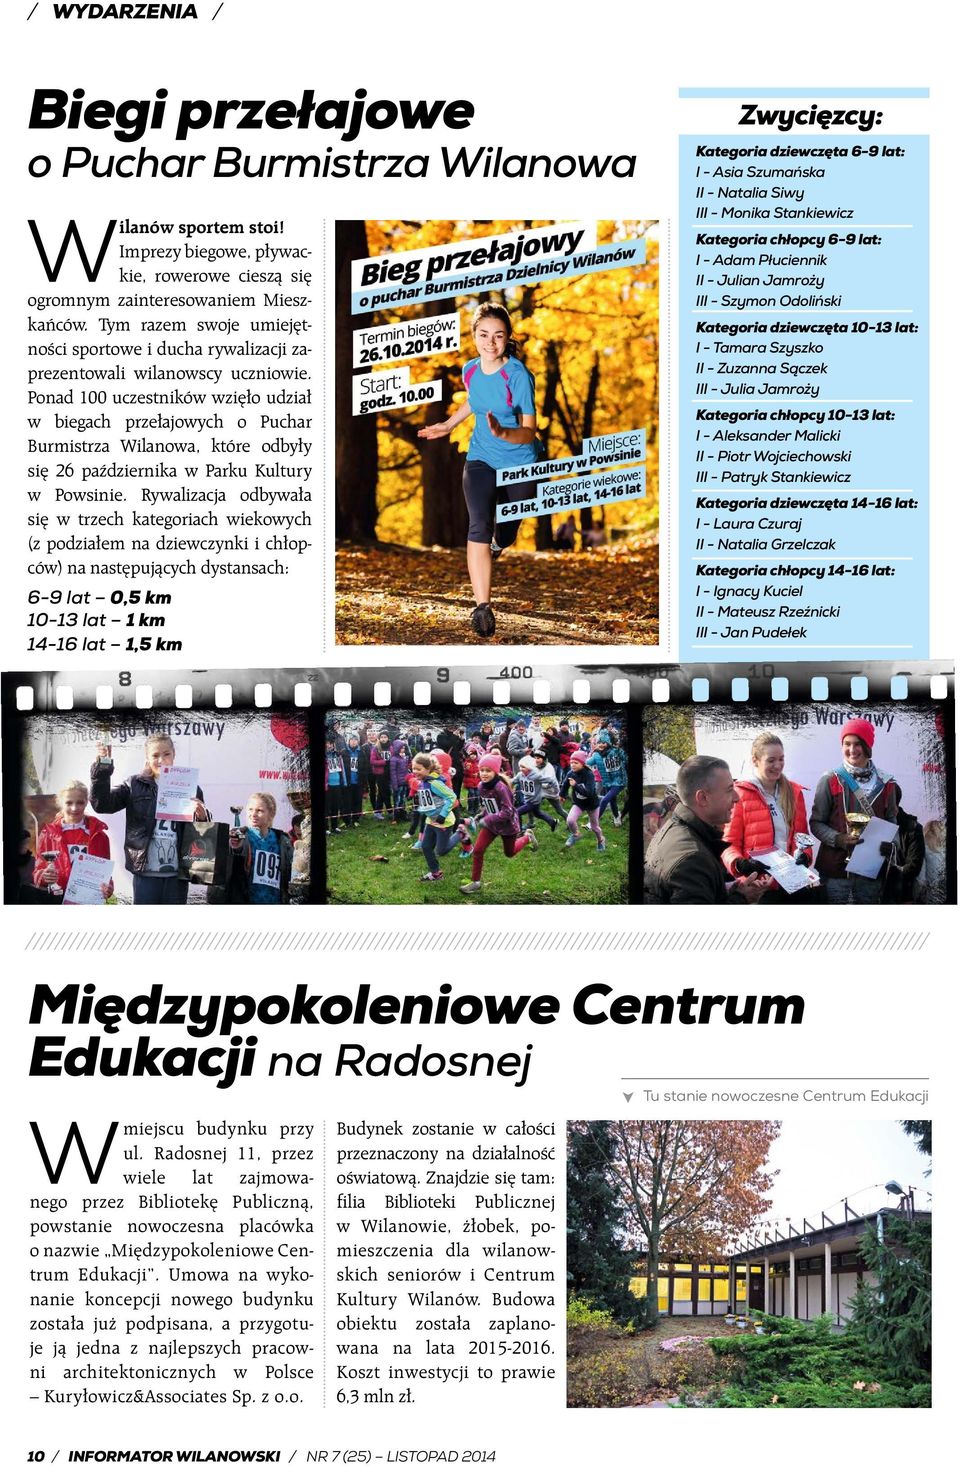 Ponad 100 uczestników wzięło udział w biegach przełajowych o Puchar Burmistrza Wilanowa, które odbyły się 26 października w Parku Kultury w Powsinie.